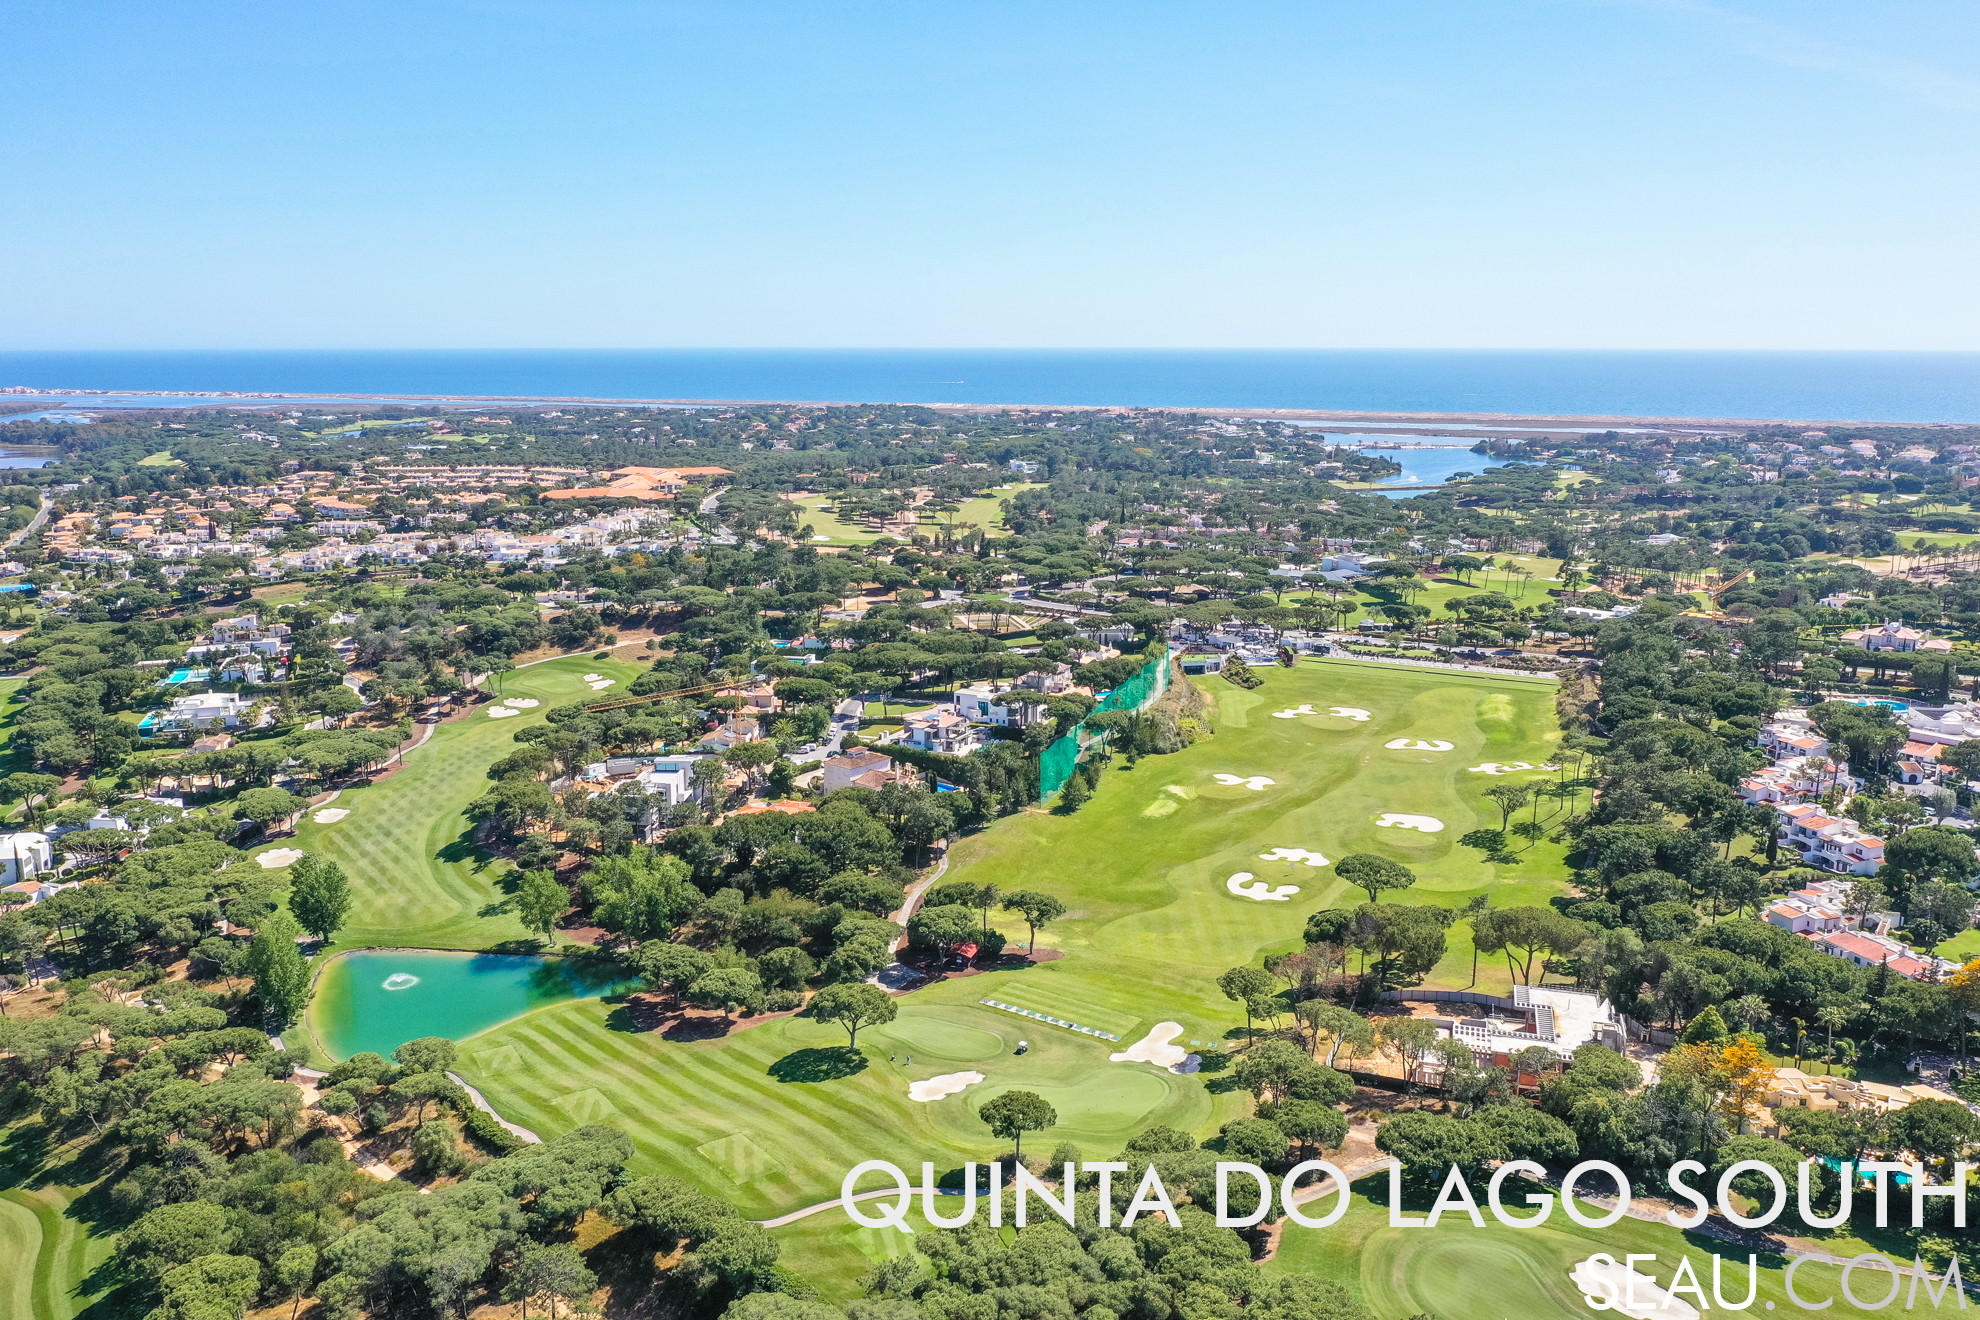 Quinta do Lago Sul ist das Gebiet Quinta do Lago südlich des 4. Kreisverkehrs, wo sich der Golfplatz Quinta do Lago Sul, der See Quinta do Lago, die Strandzugangsbrücke und die Ria Formosa befinden. In diesem Bild können wir den Golf-Trainingsplatz, den Golfplatz, die Häuser und einige Urbanisationen in Quinta do Lago hervorheben. Im Hintergrund sehen wir den See und das Meer